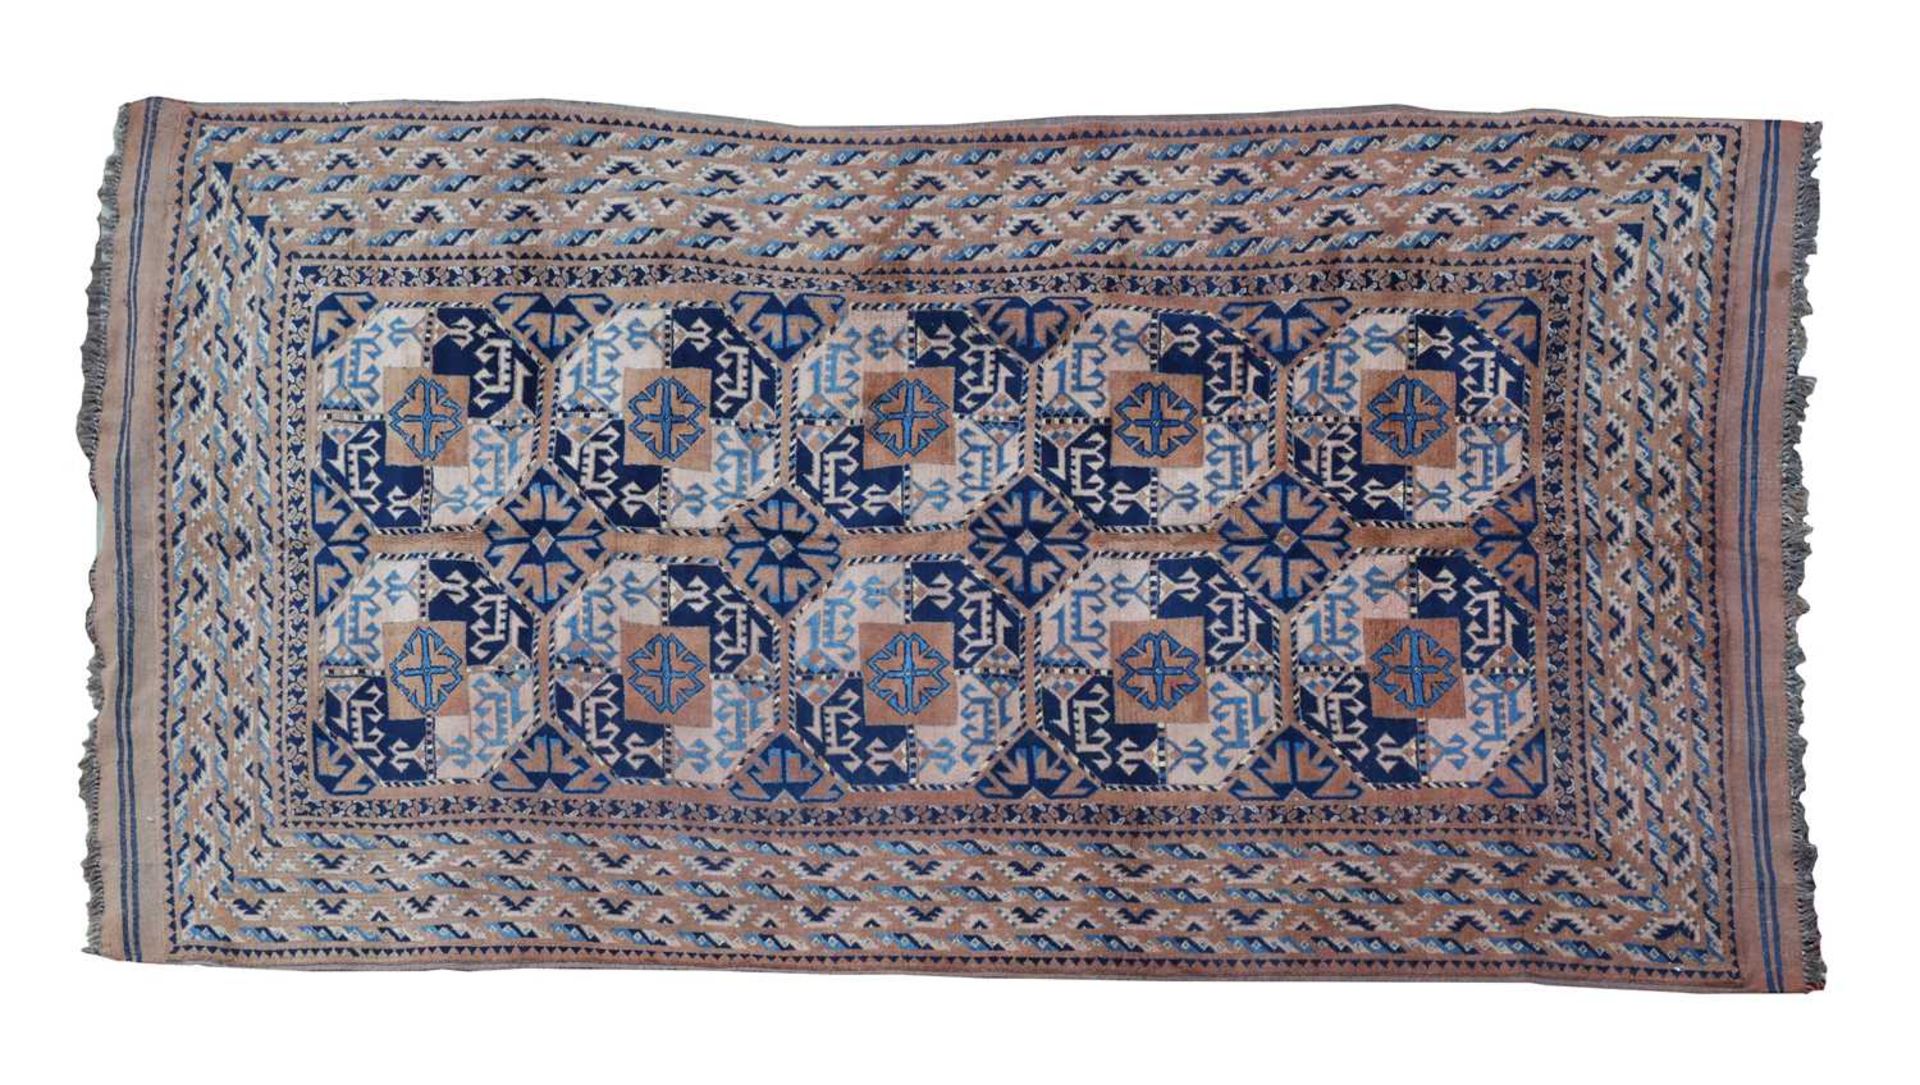 A Central Asian Ersari rug,